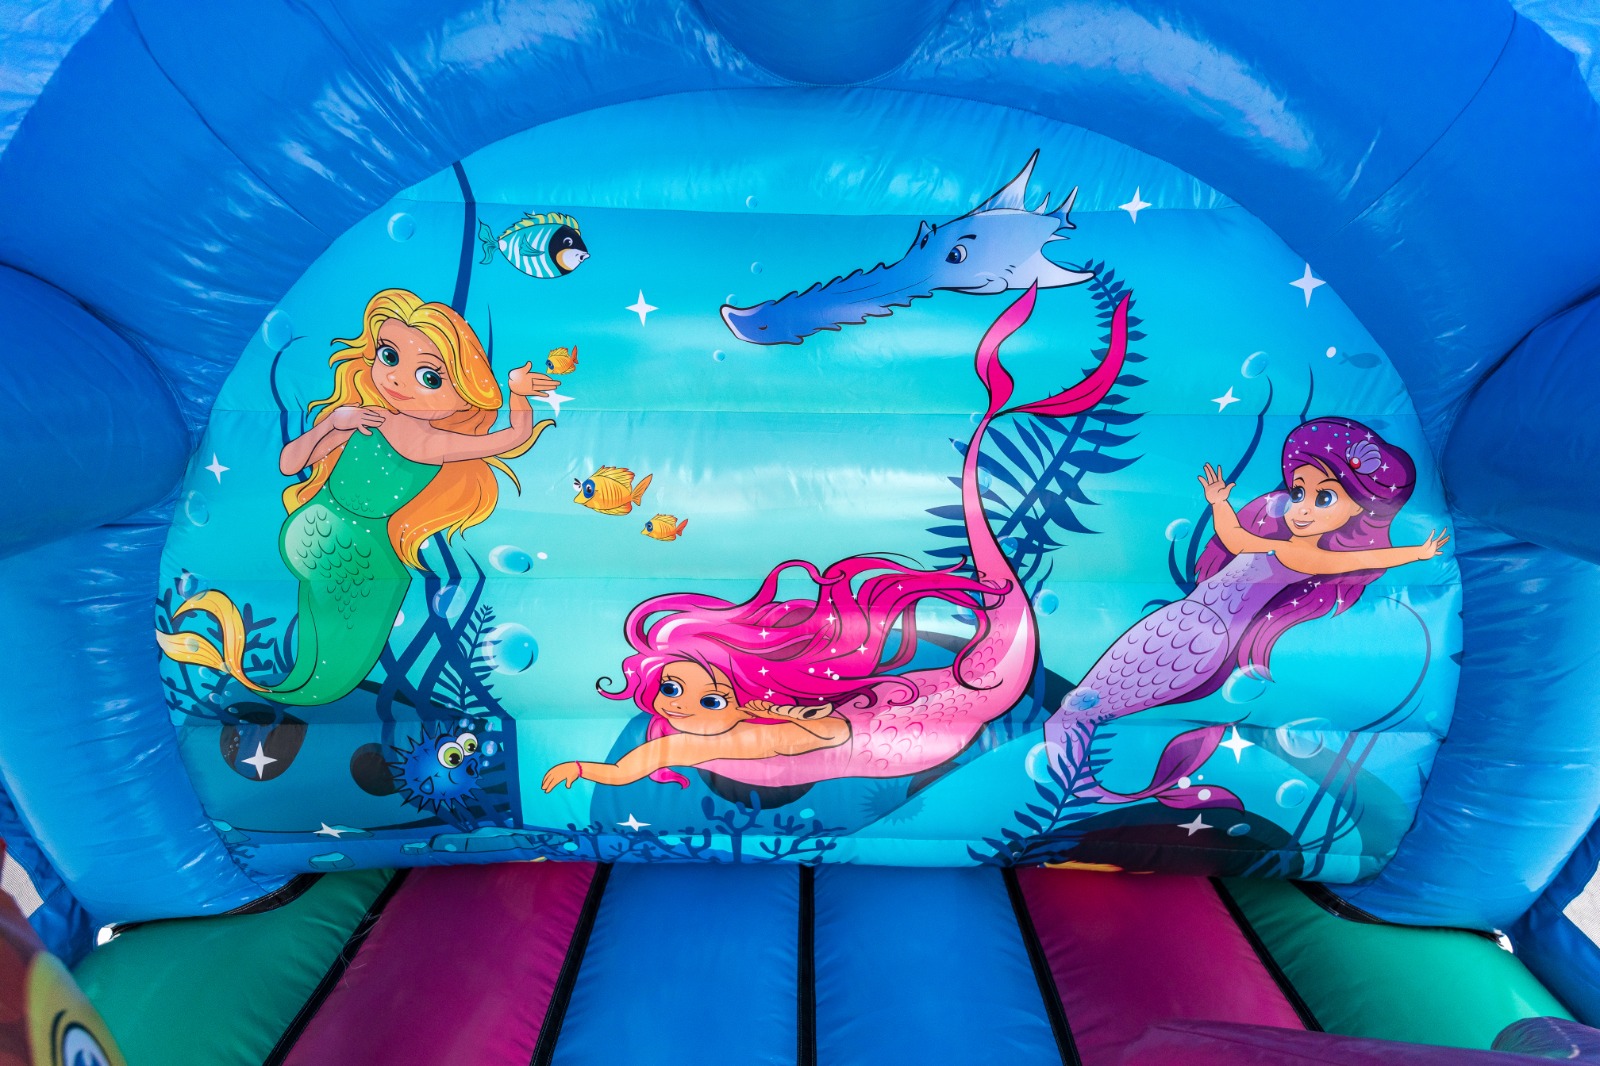 Curved Mermaid Bouncy Castle